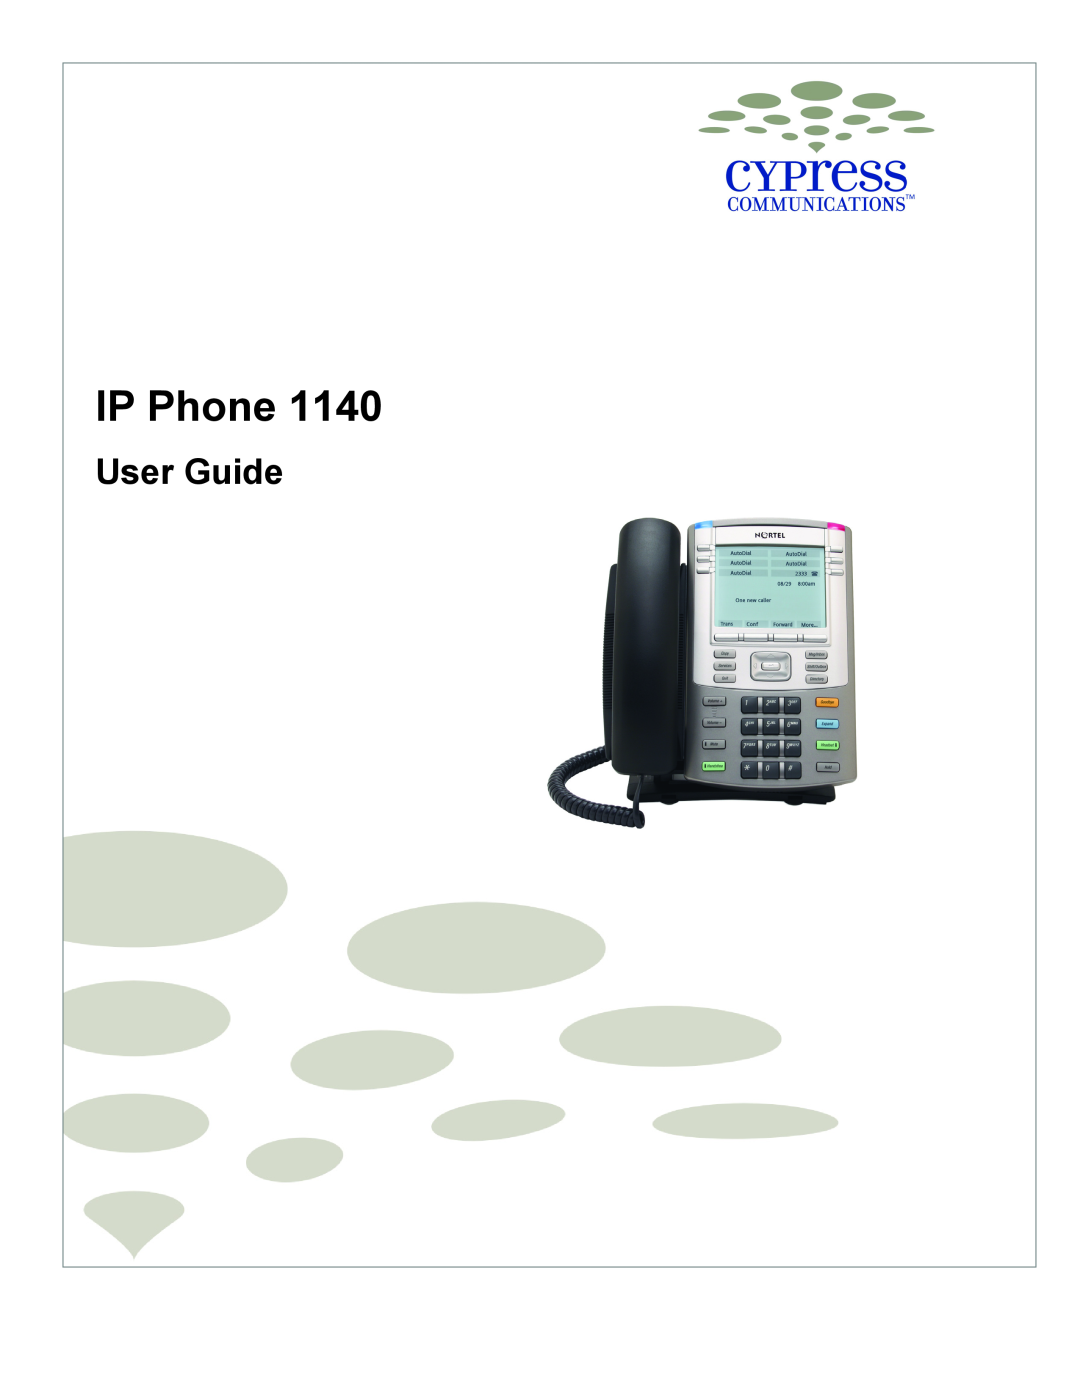 DeWalt 1140 manual User Guide, IP Phone 